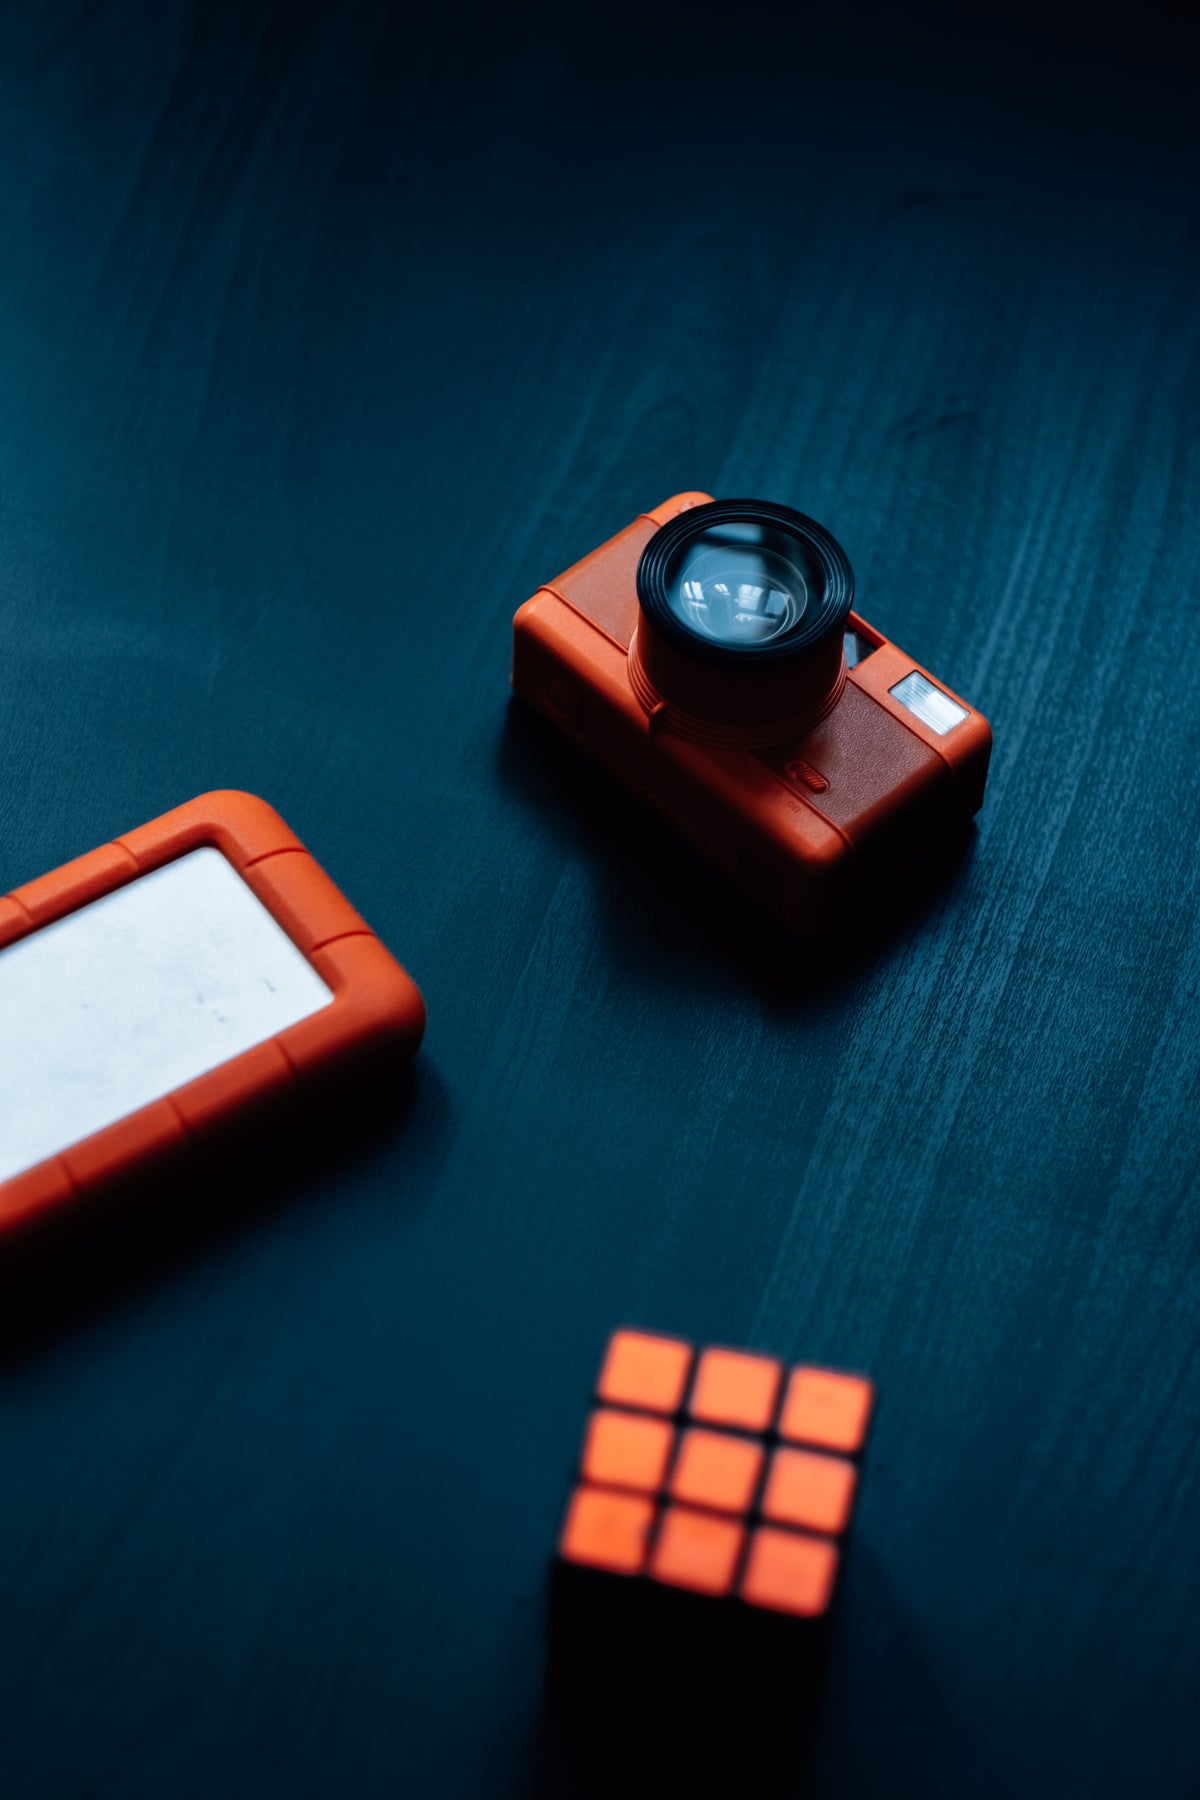 橙色魔方相机和硬盘